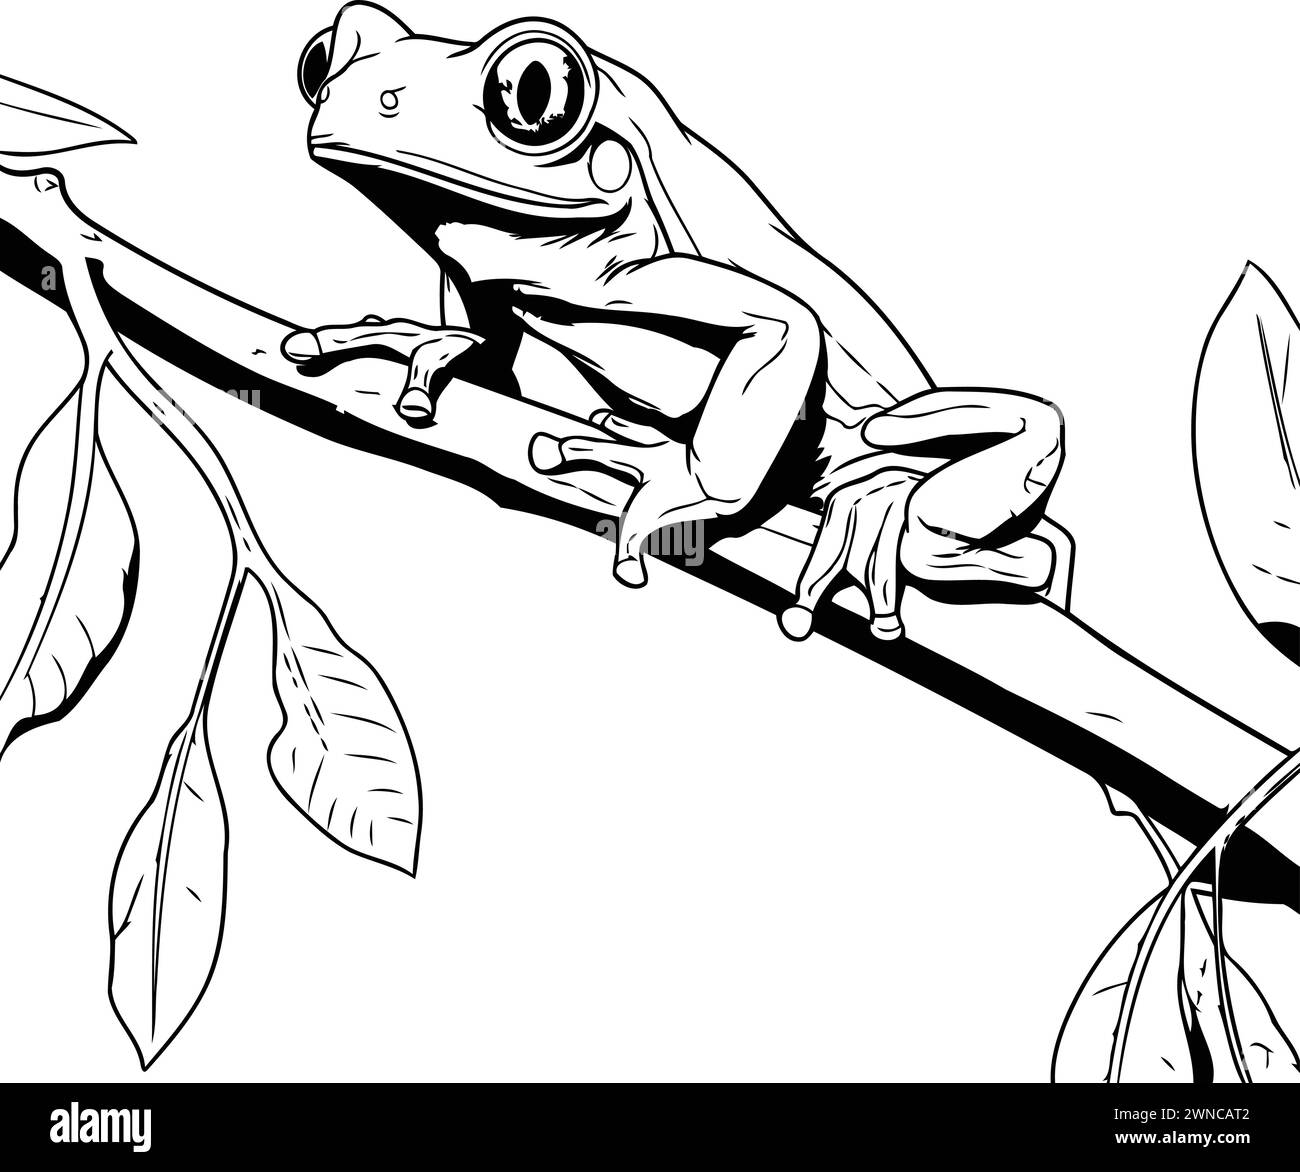 illustration d'une grenouille assise sur une branche d'arbre. esquissez pour votre conception Illustration de Vecteur